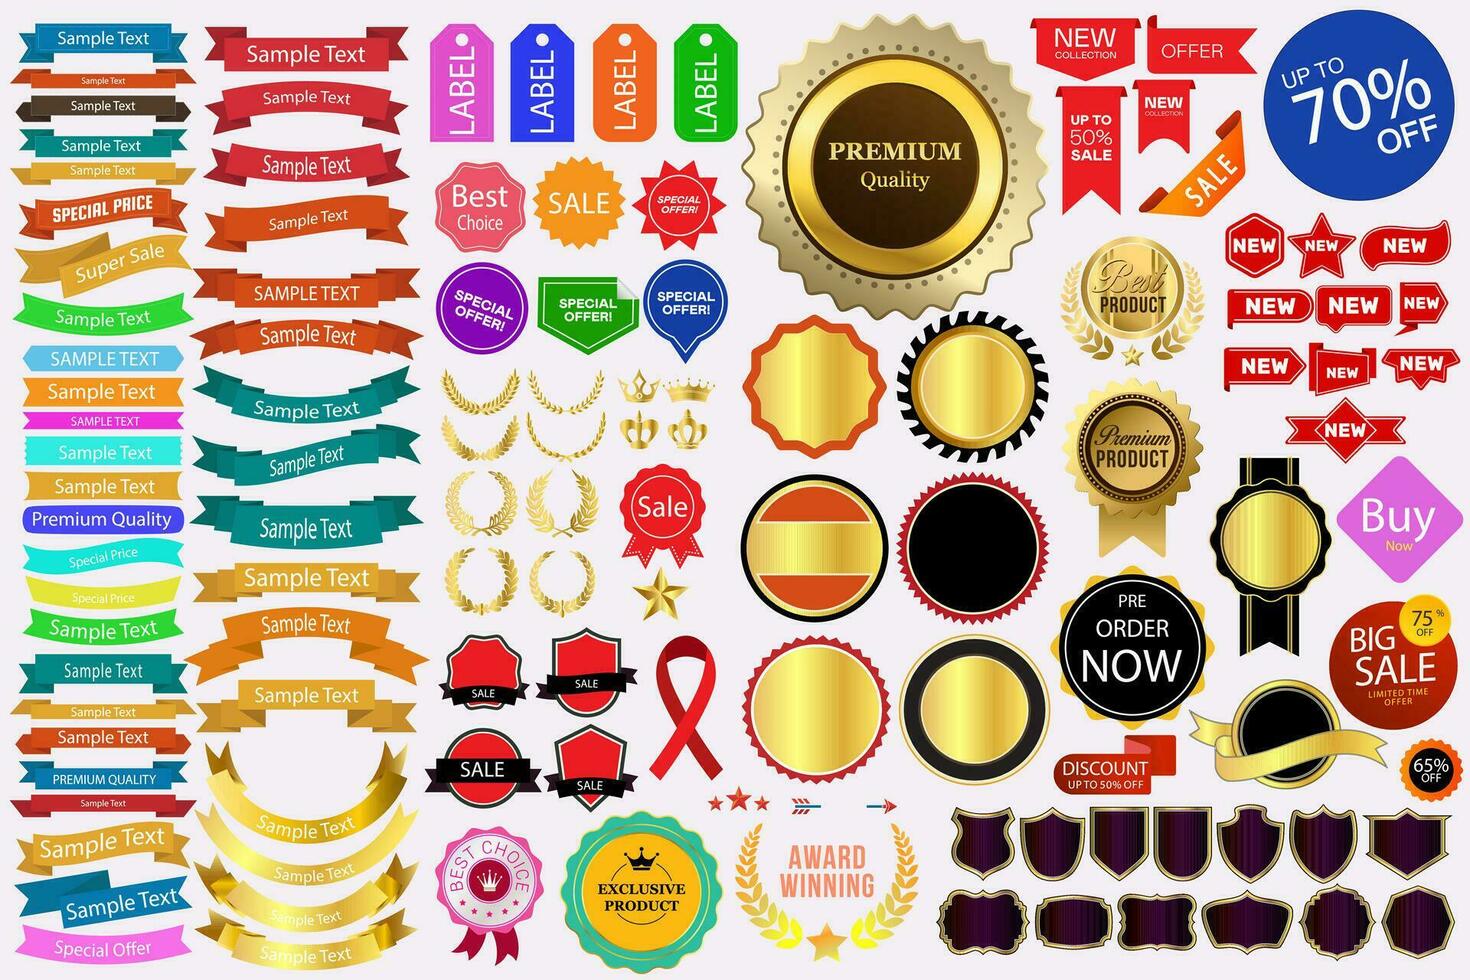 verkoop en promotionele badges premie kwaliteit het beste keuze gouden etiketten kleurrijk lint reeks ontwerp elementen reusachtig verzameling vlak vector